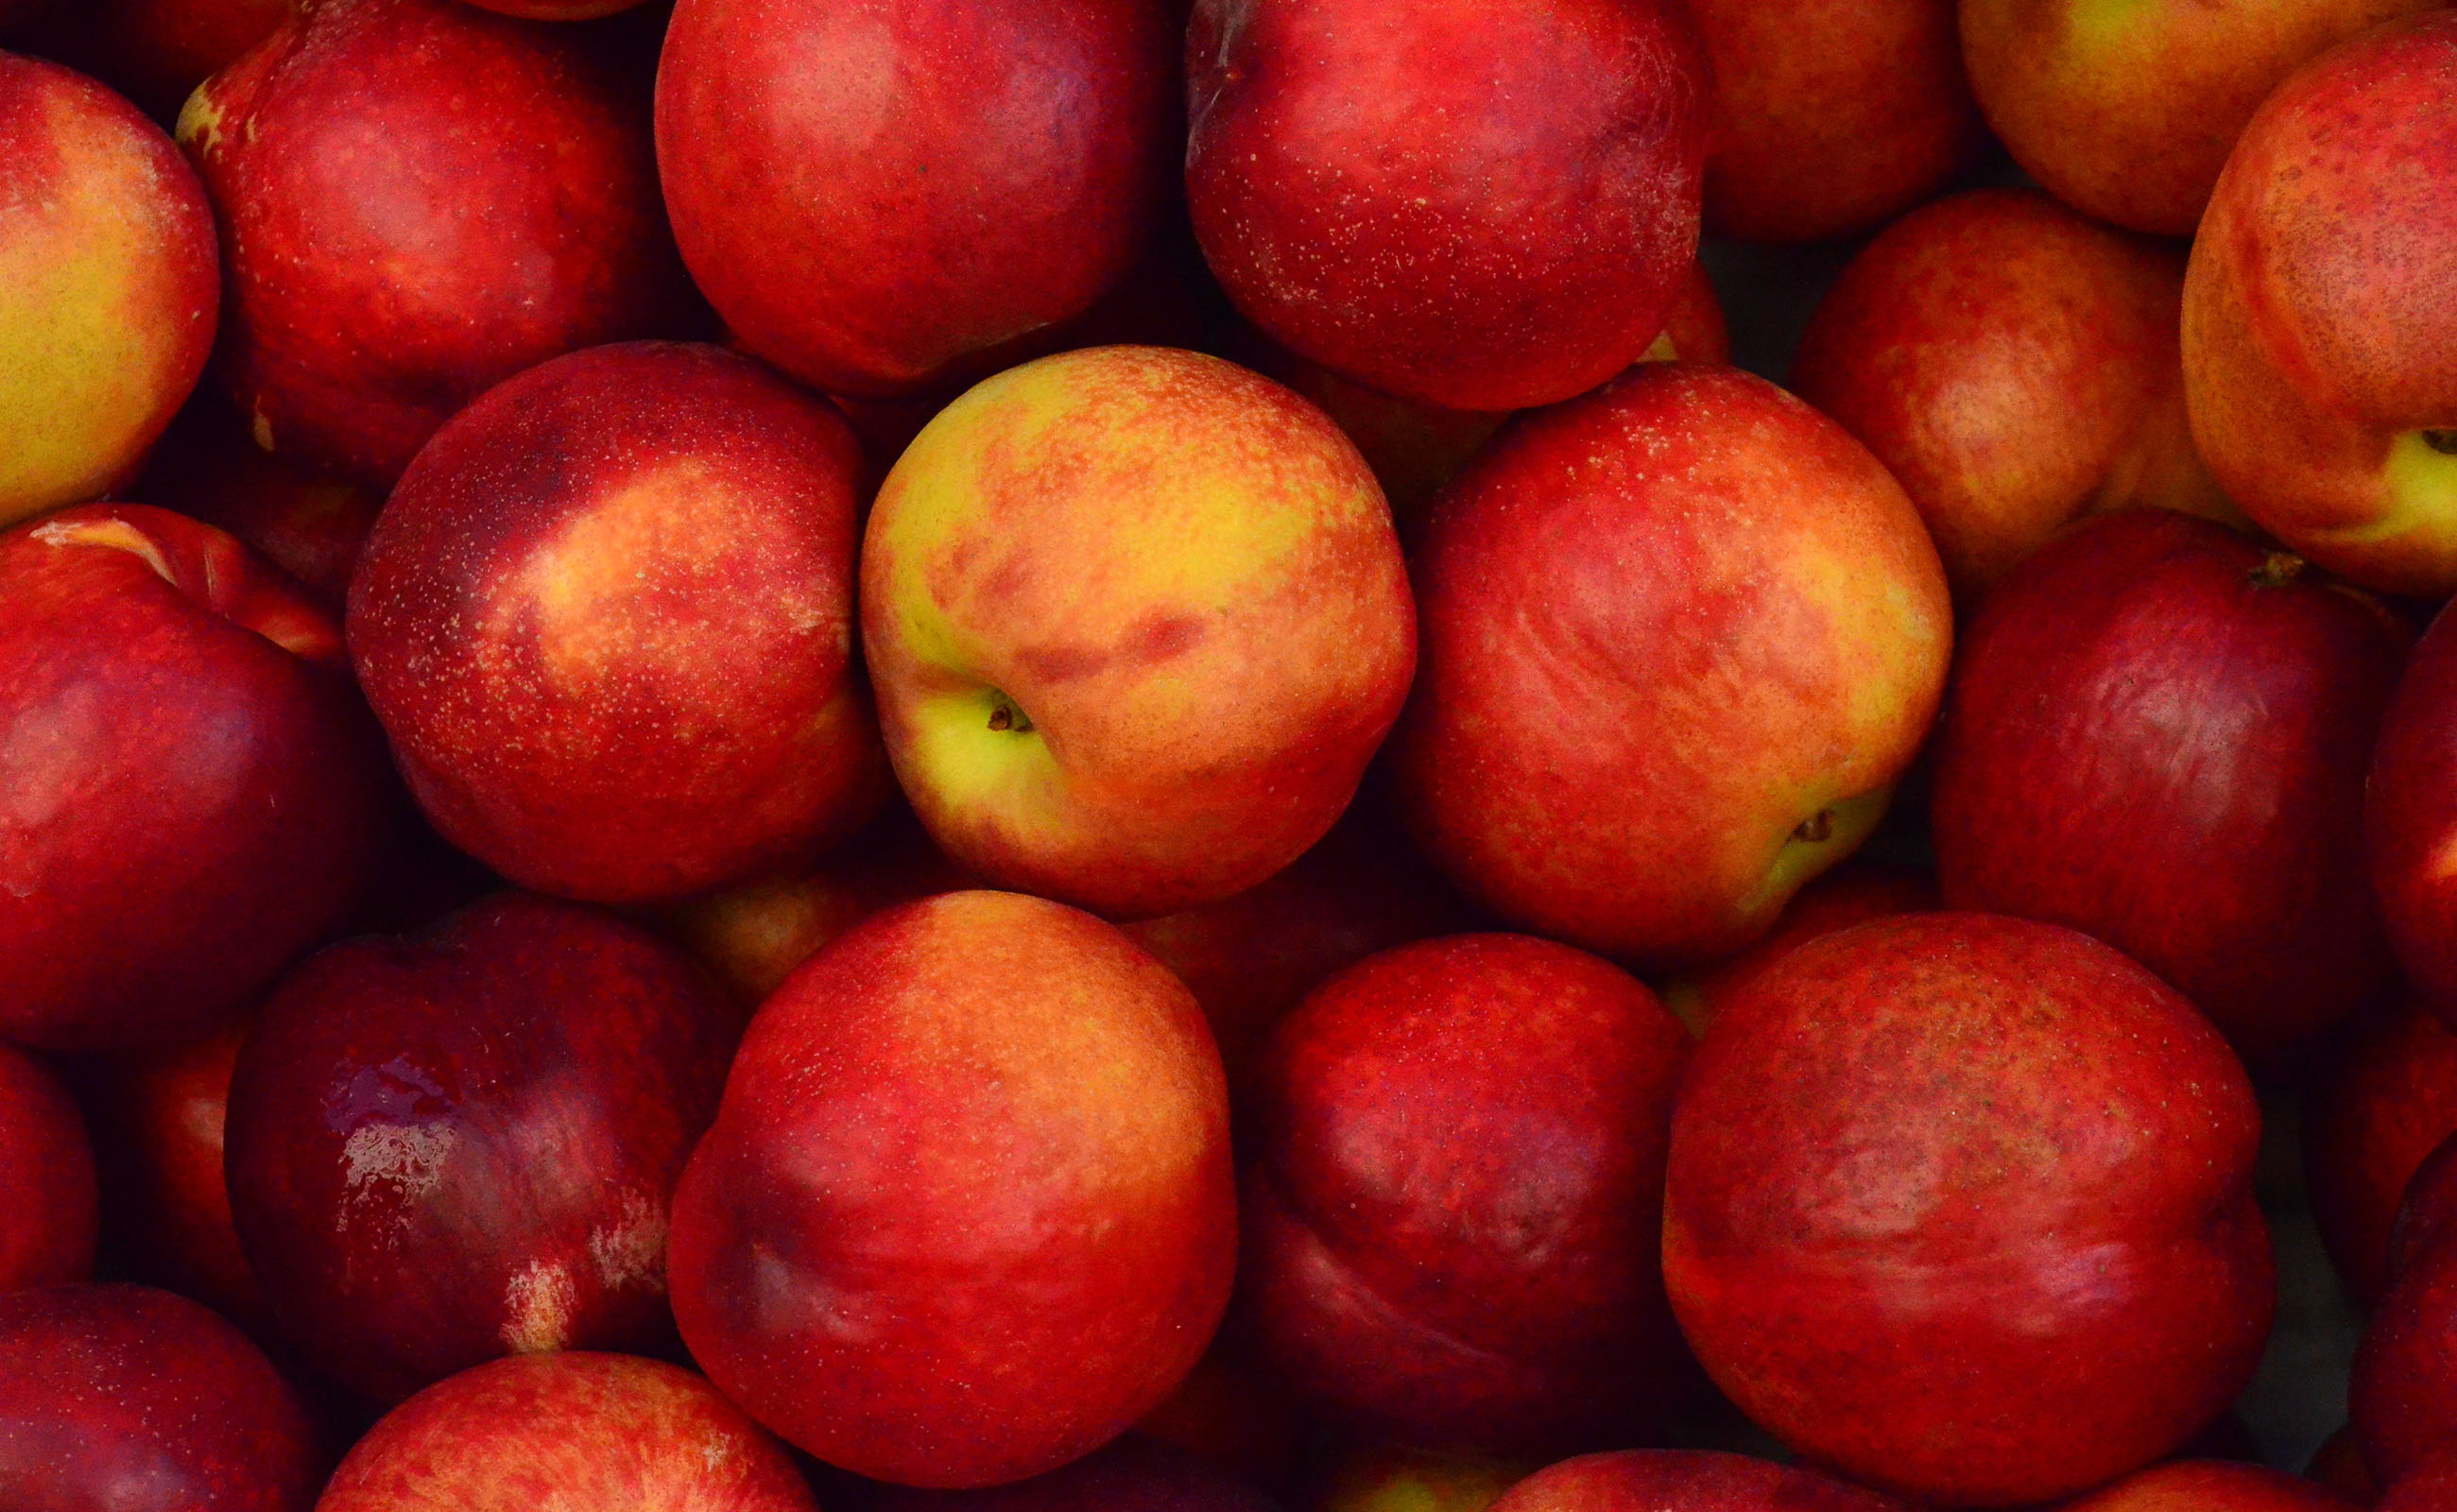 #FridayFive: Apple Varieties